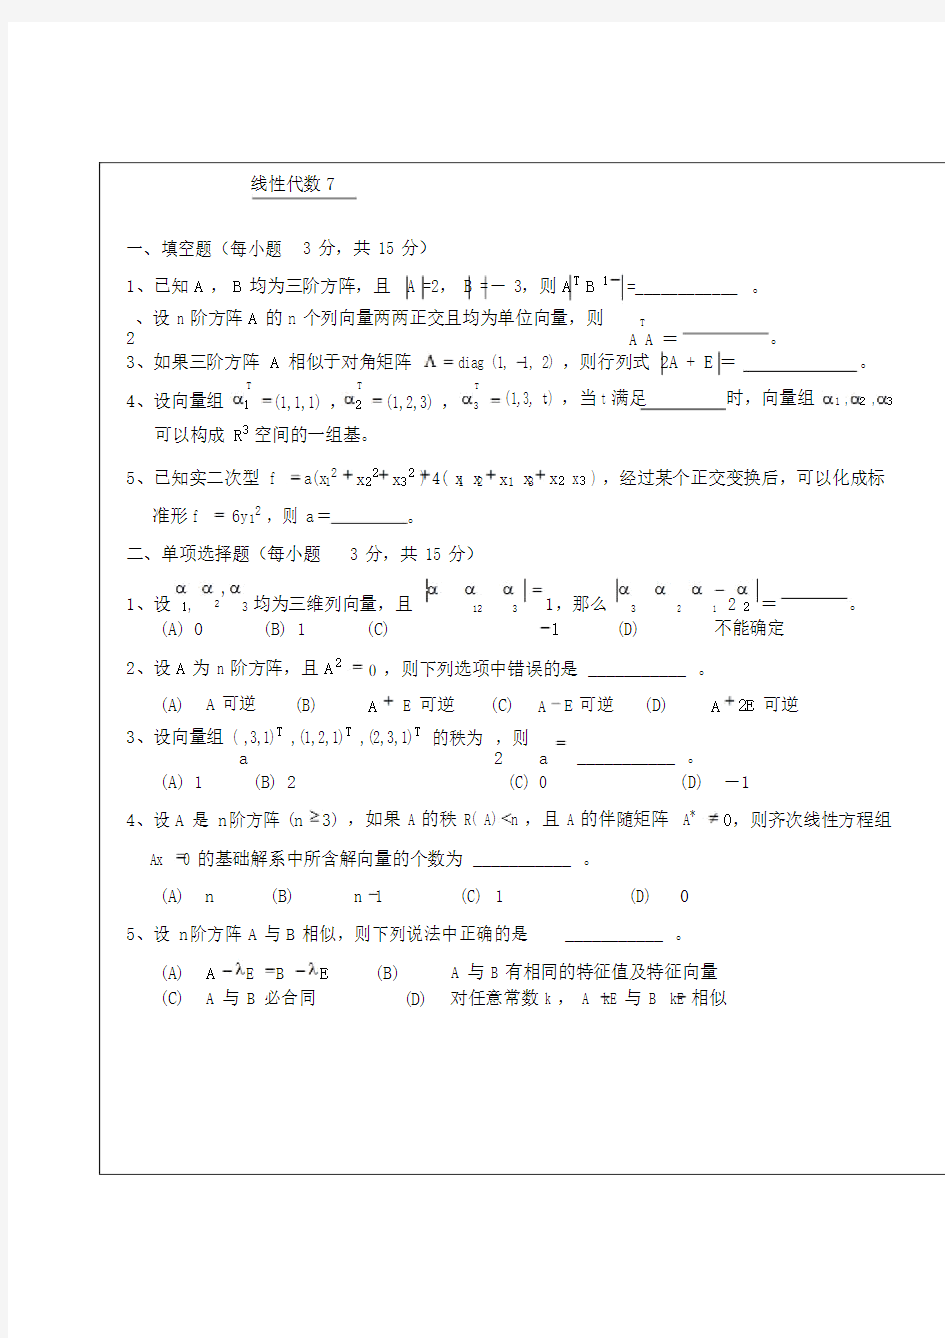 武汉理工大学whut线性代数考试试题及其参考答案(七)